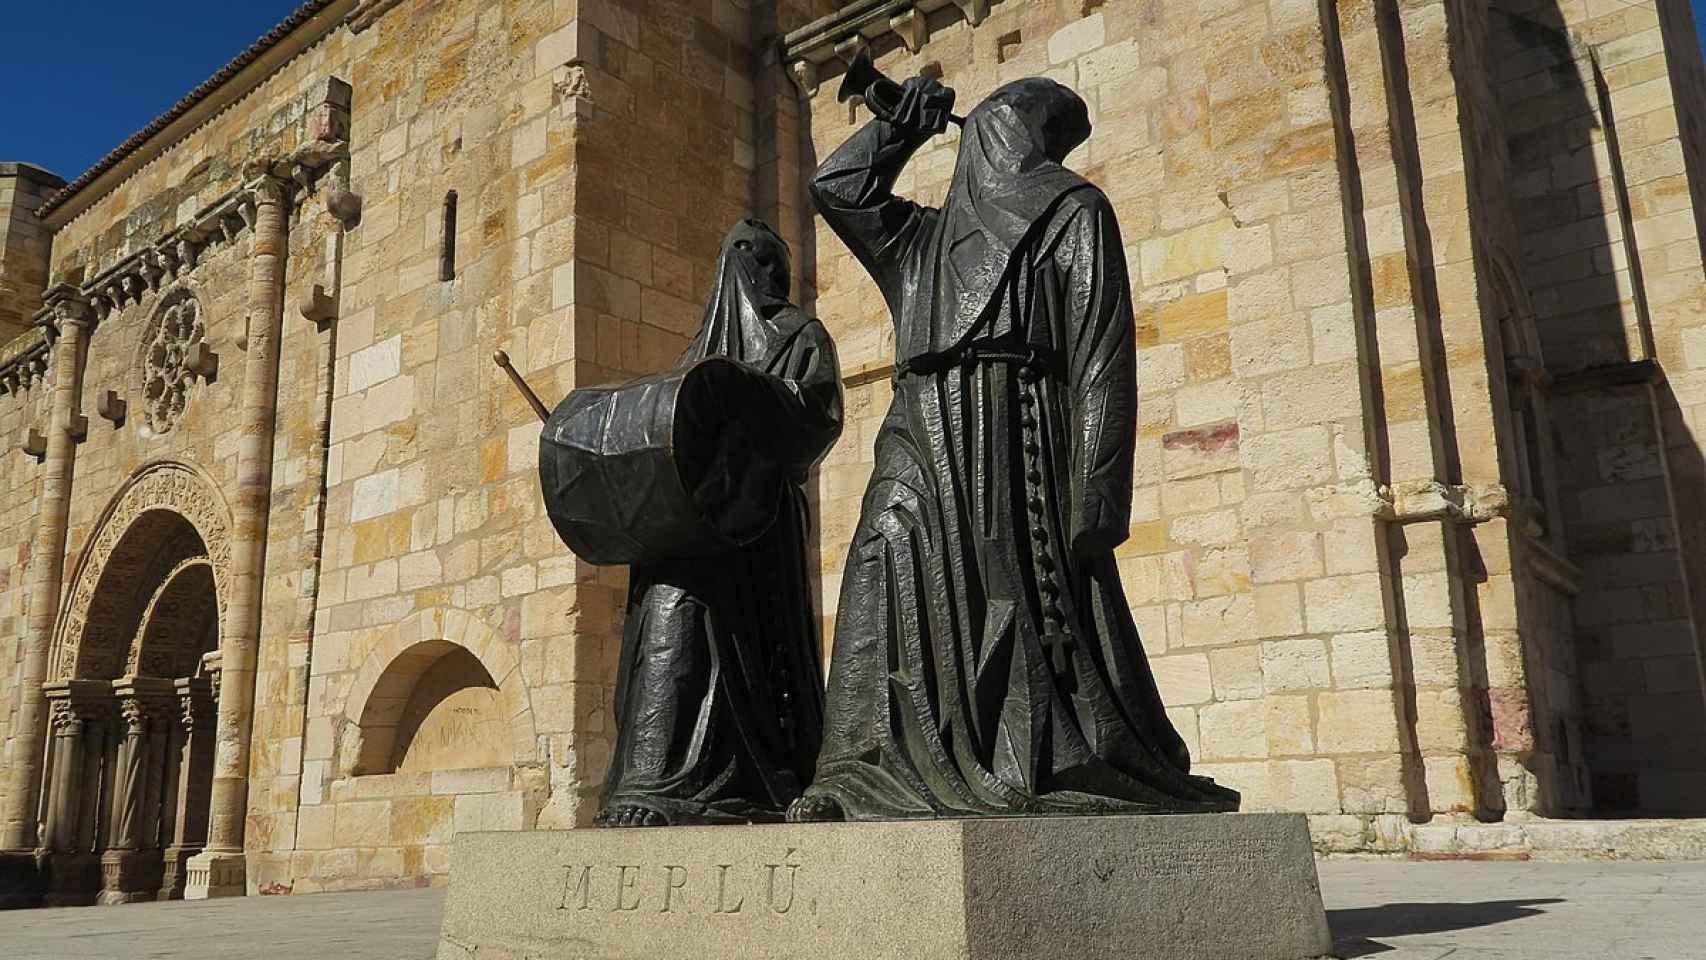 Estatua del Merlú en Zamora